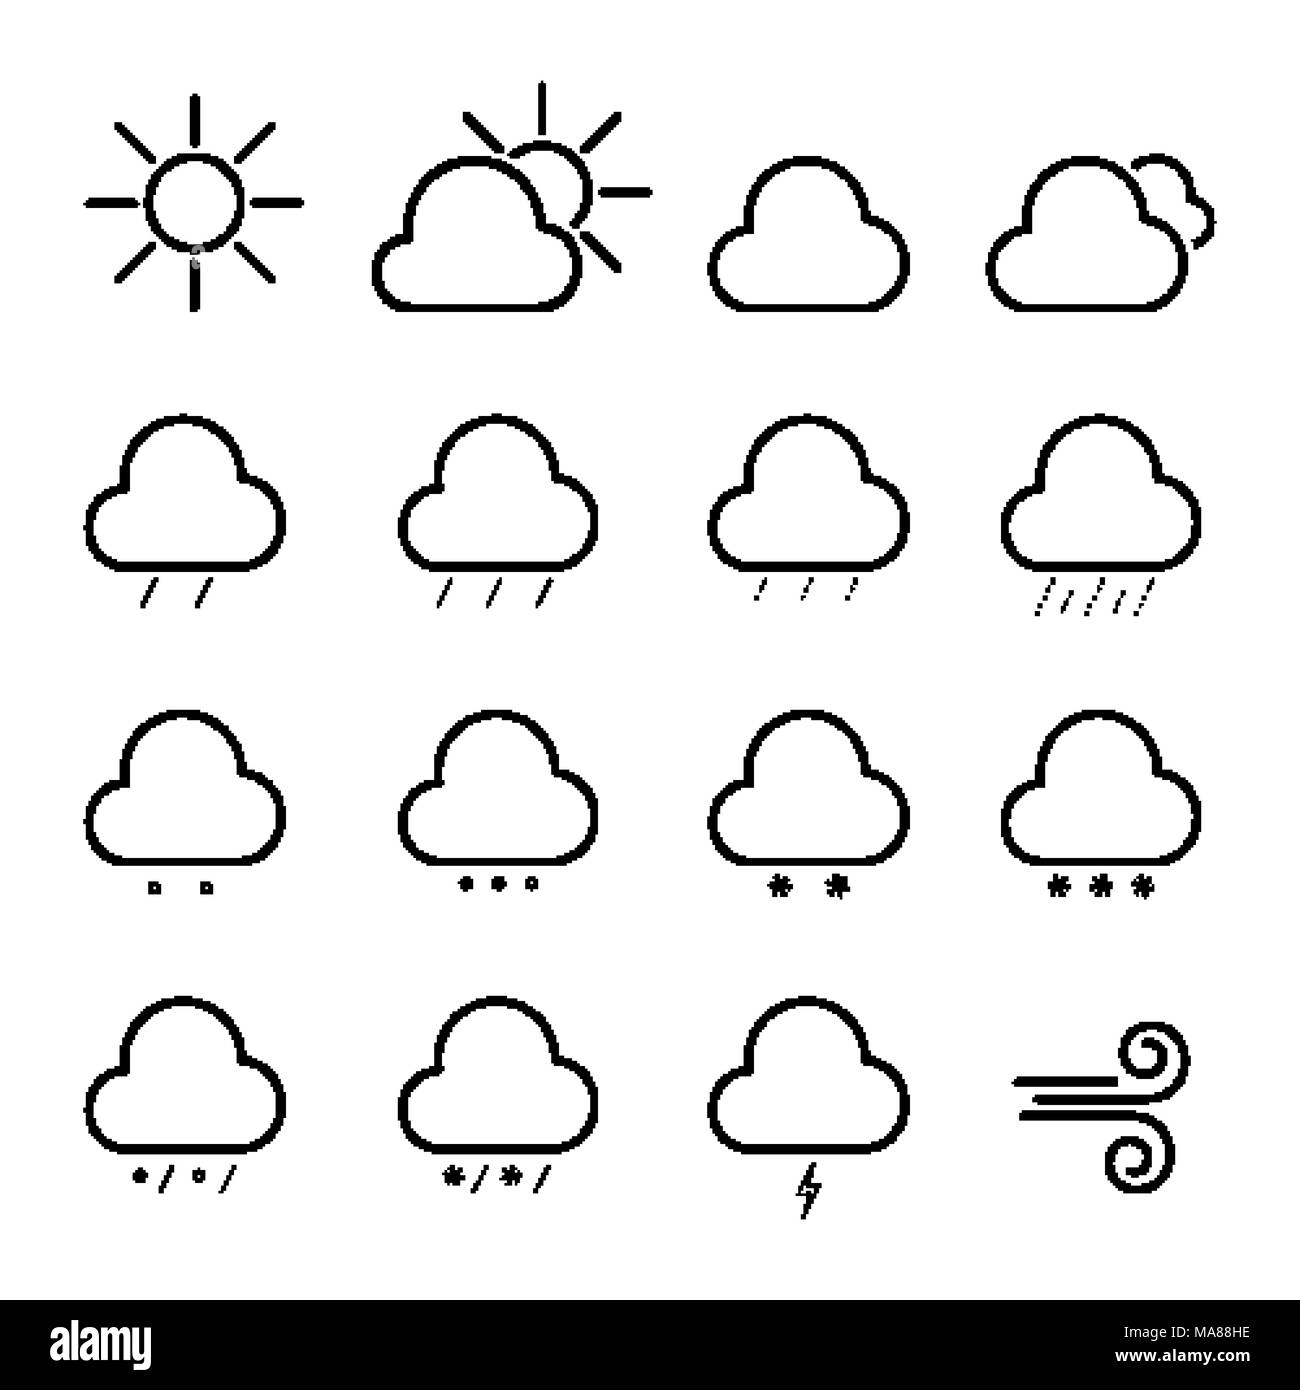 Einfache Prognose Zeile für Symbole. Wetter zeichen Sammlung Stock Vektor